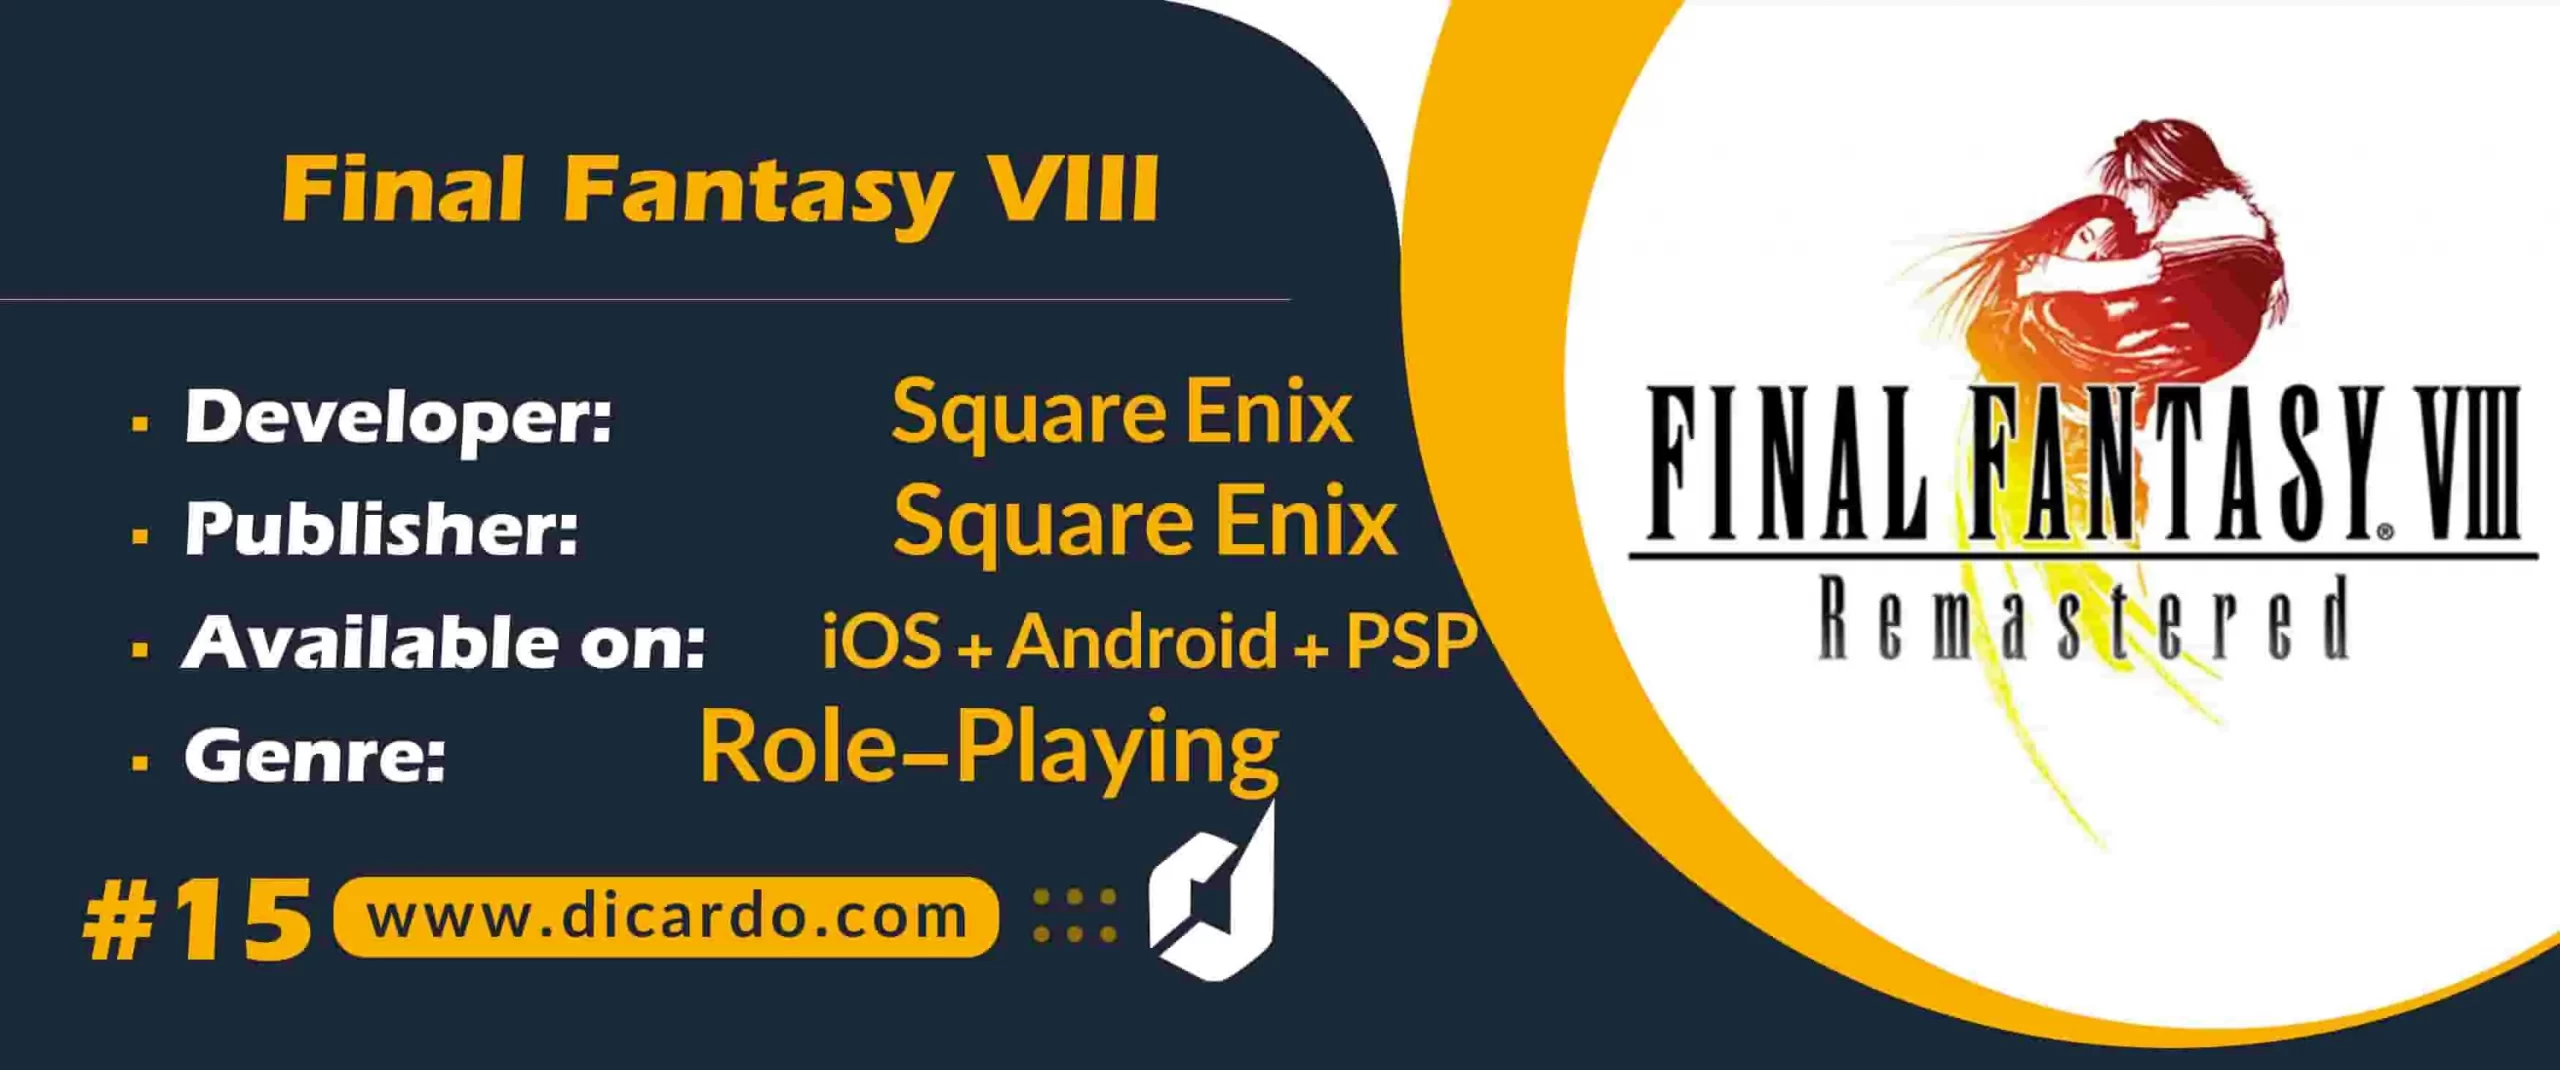 #15 فاینال فانتزی هشتم Final Fantasy VIII از بهترین بازیهای ژاپنی JRPG